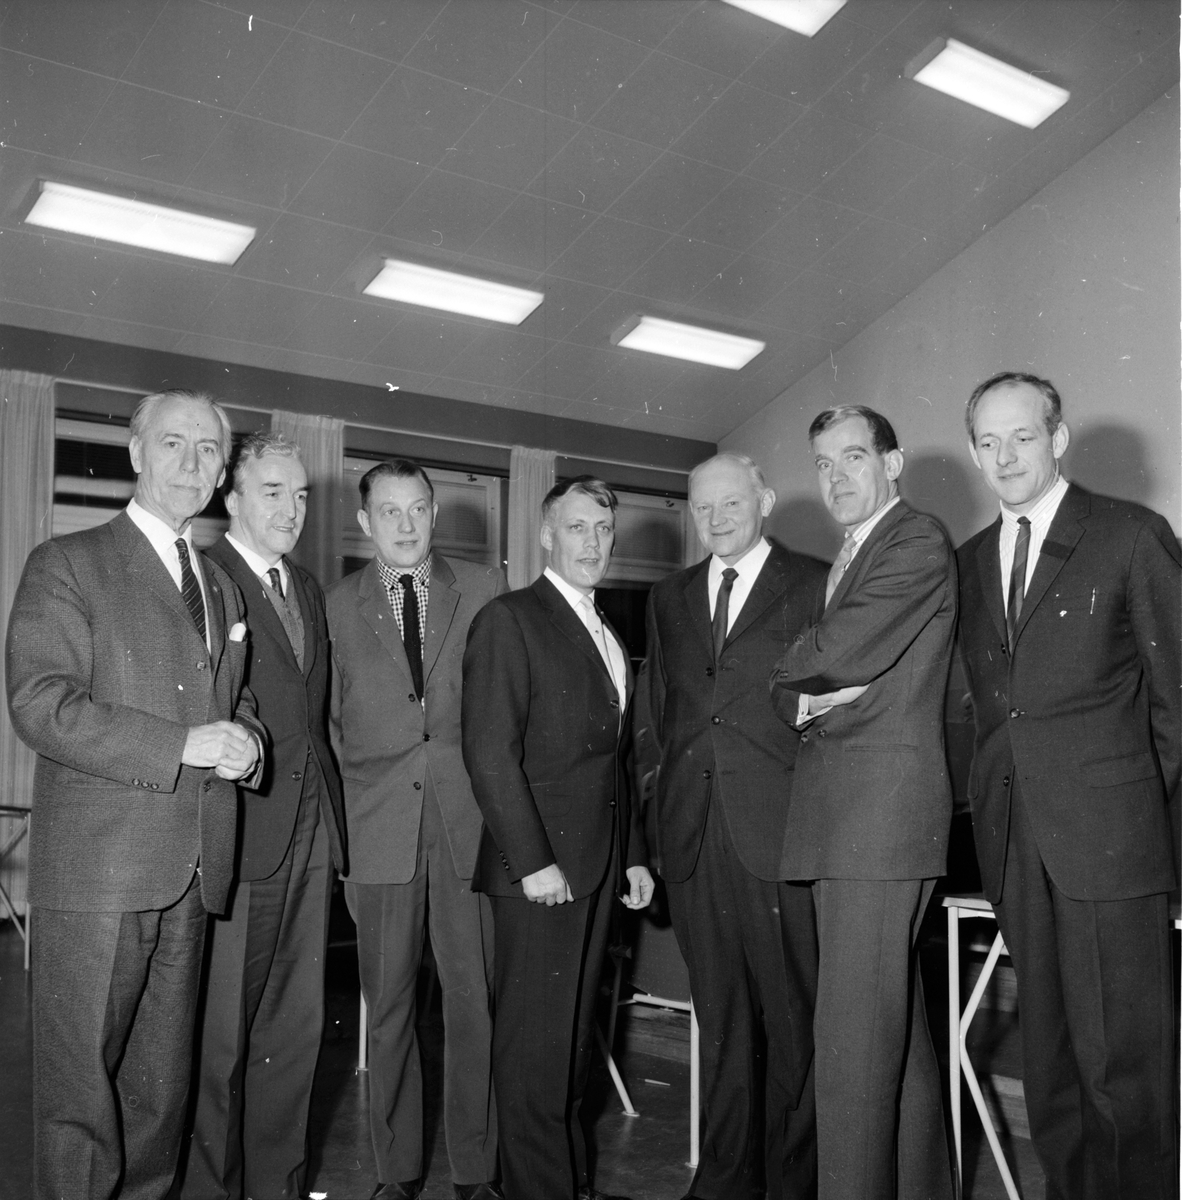 Ungdomskonferens i Bollnäs,
Ungdomsstyrelsen,
4 December 1964